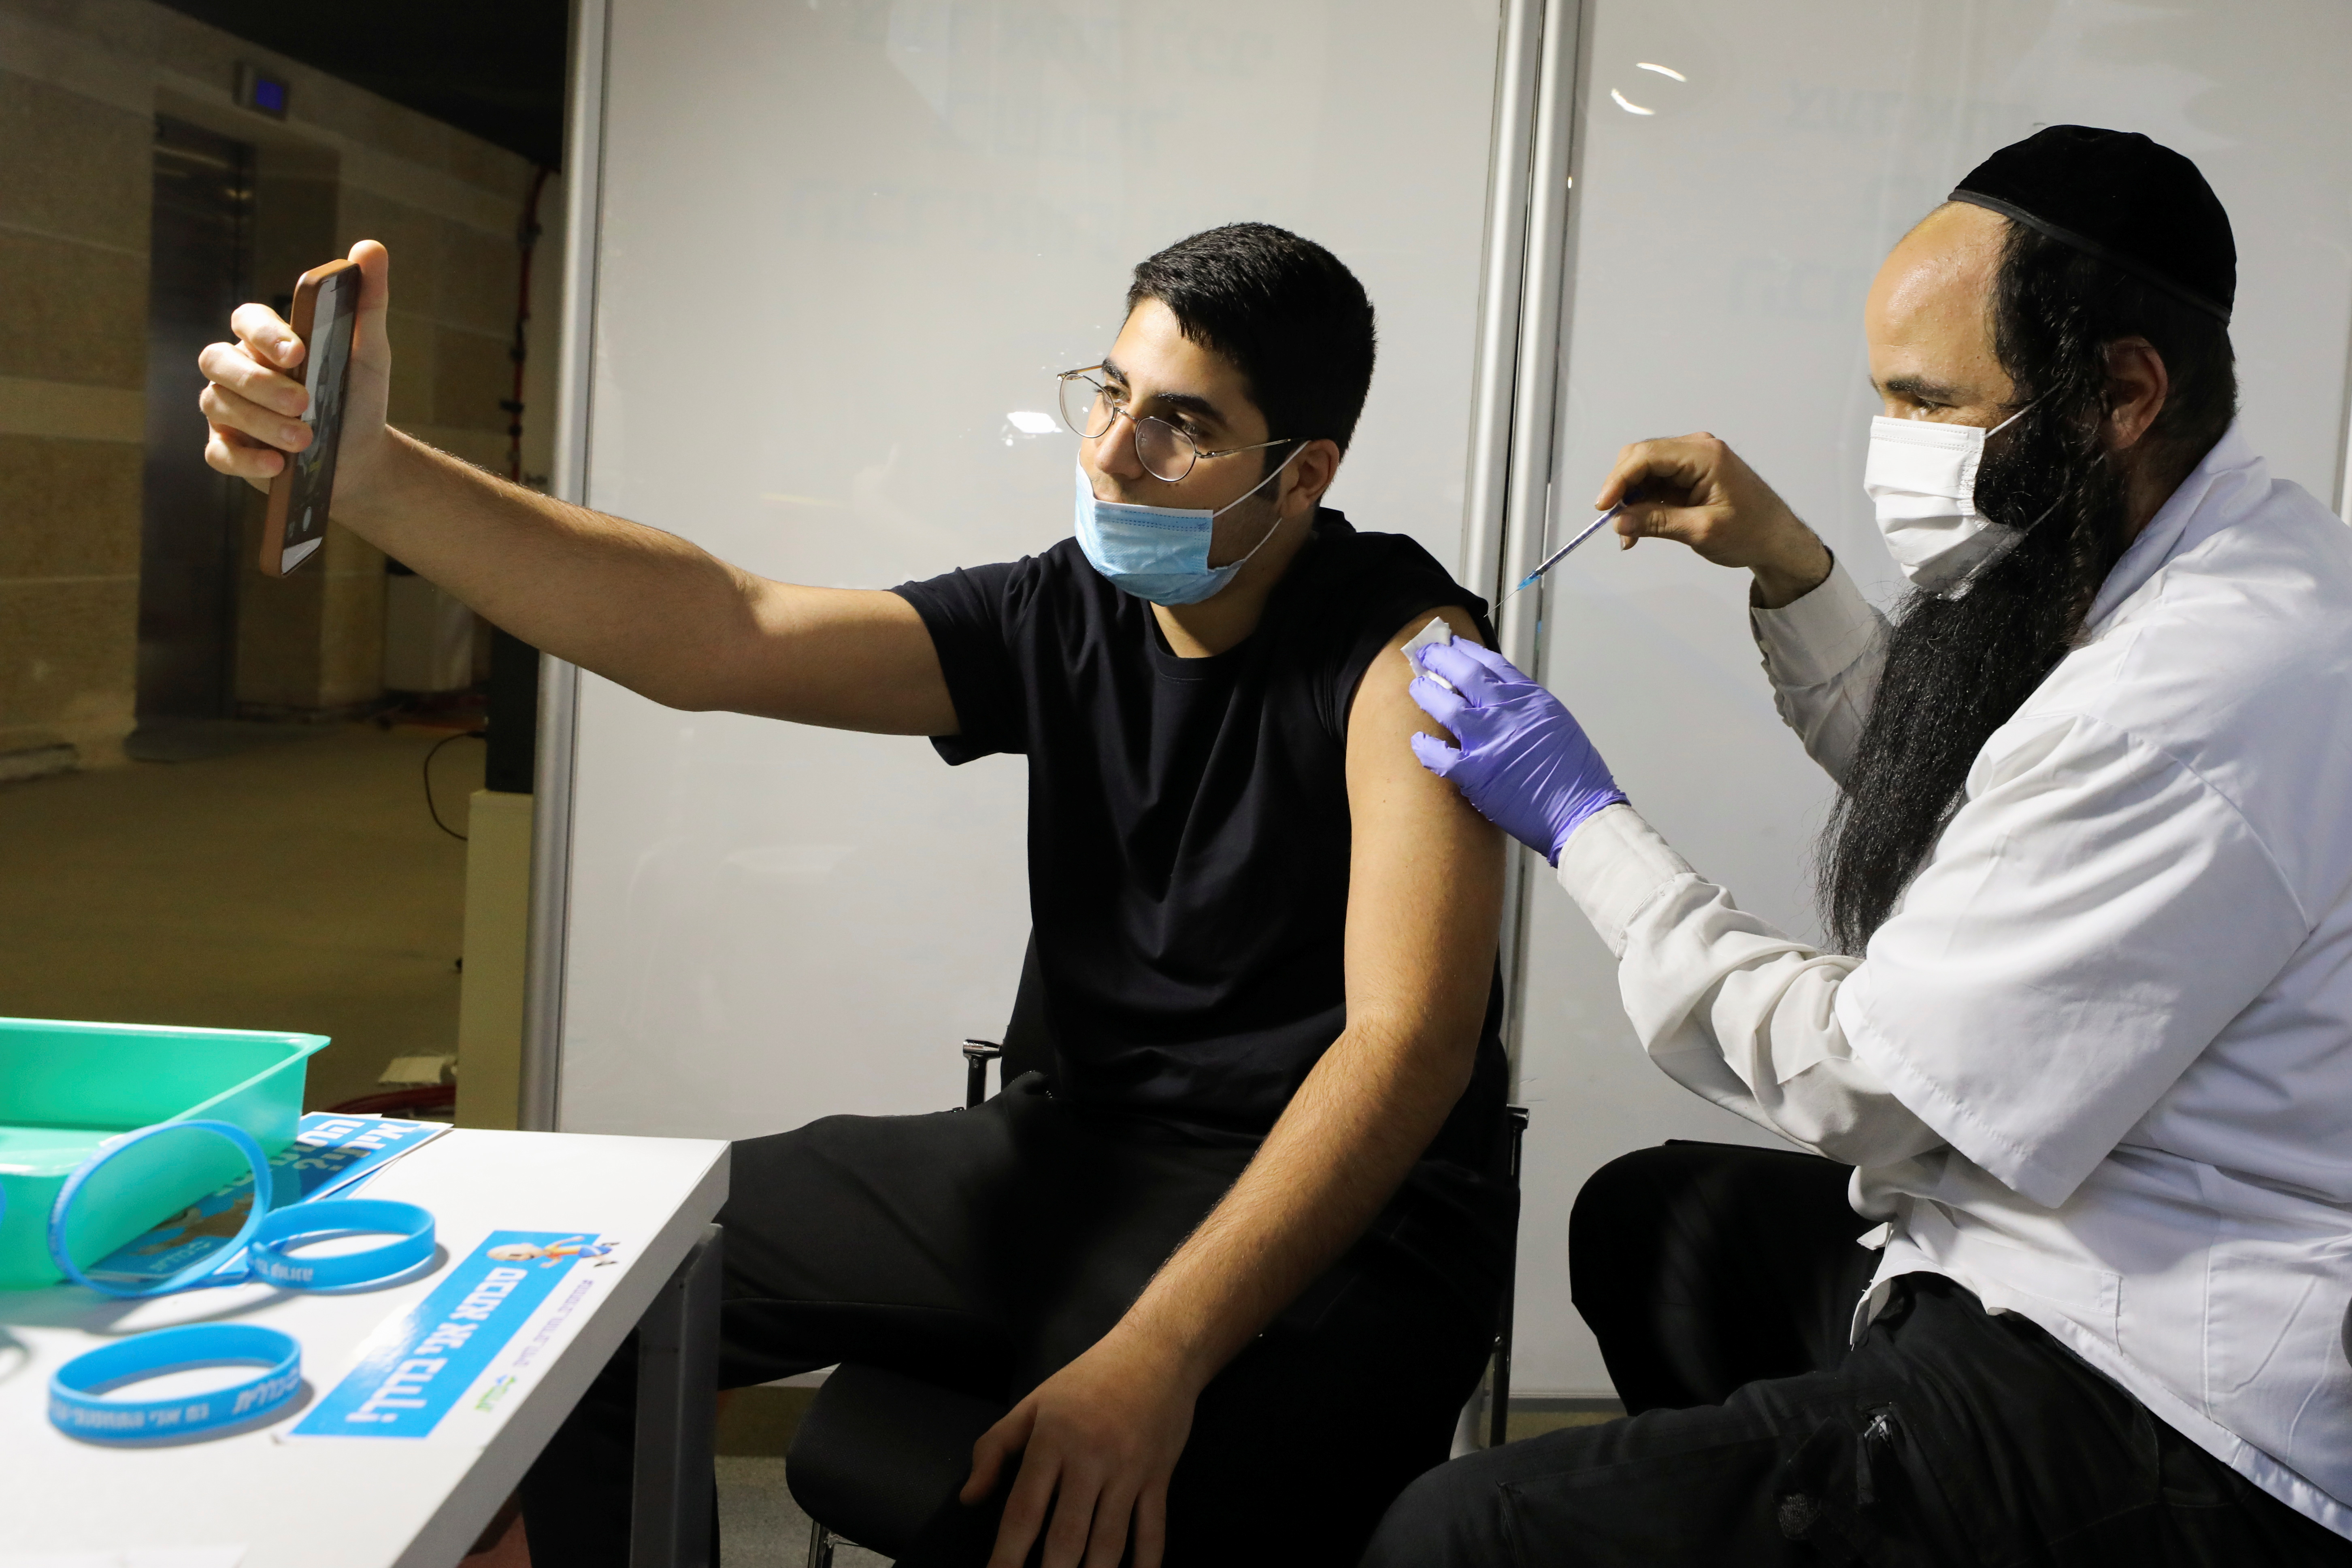 Un hombre recibe una vacuna contra la enfermedad del coronavirus (COVID-19) en un centro de vacunación temporal de la organización de mantenimiento de la salud (HMO) de Clalit, en un estadio deportivo en Jerusalén el 25 de febrero de 2021. Foto tomada el 25 de febrero de 2021. REUTERS/Ammar Awad